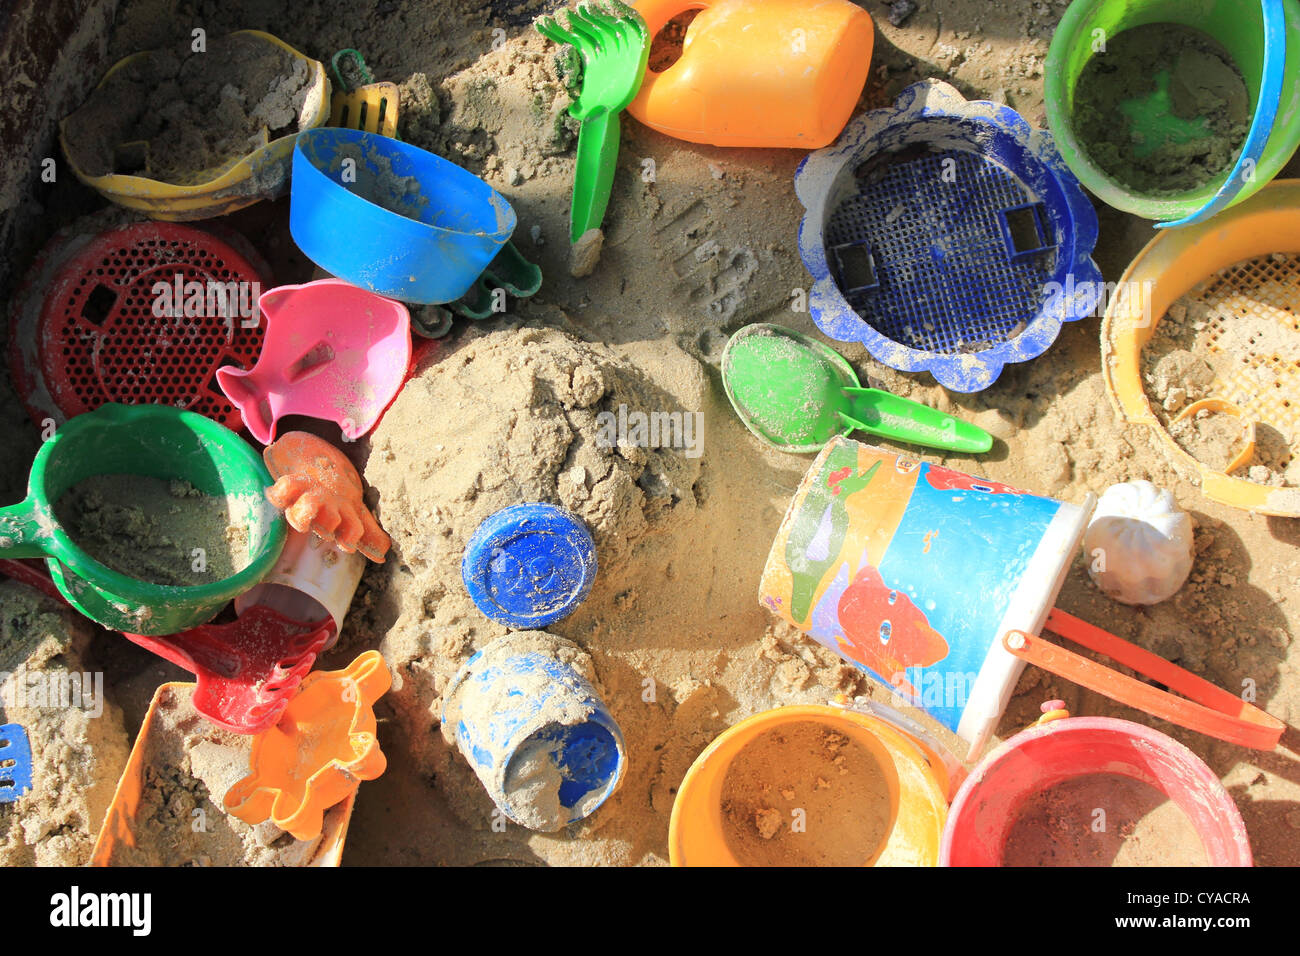 Bac à sable plein de jouets en plastique de couleurs vives Banque D'Images